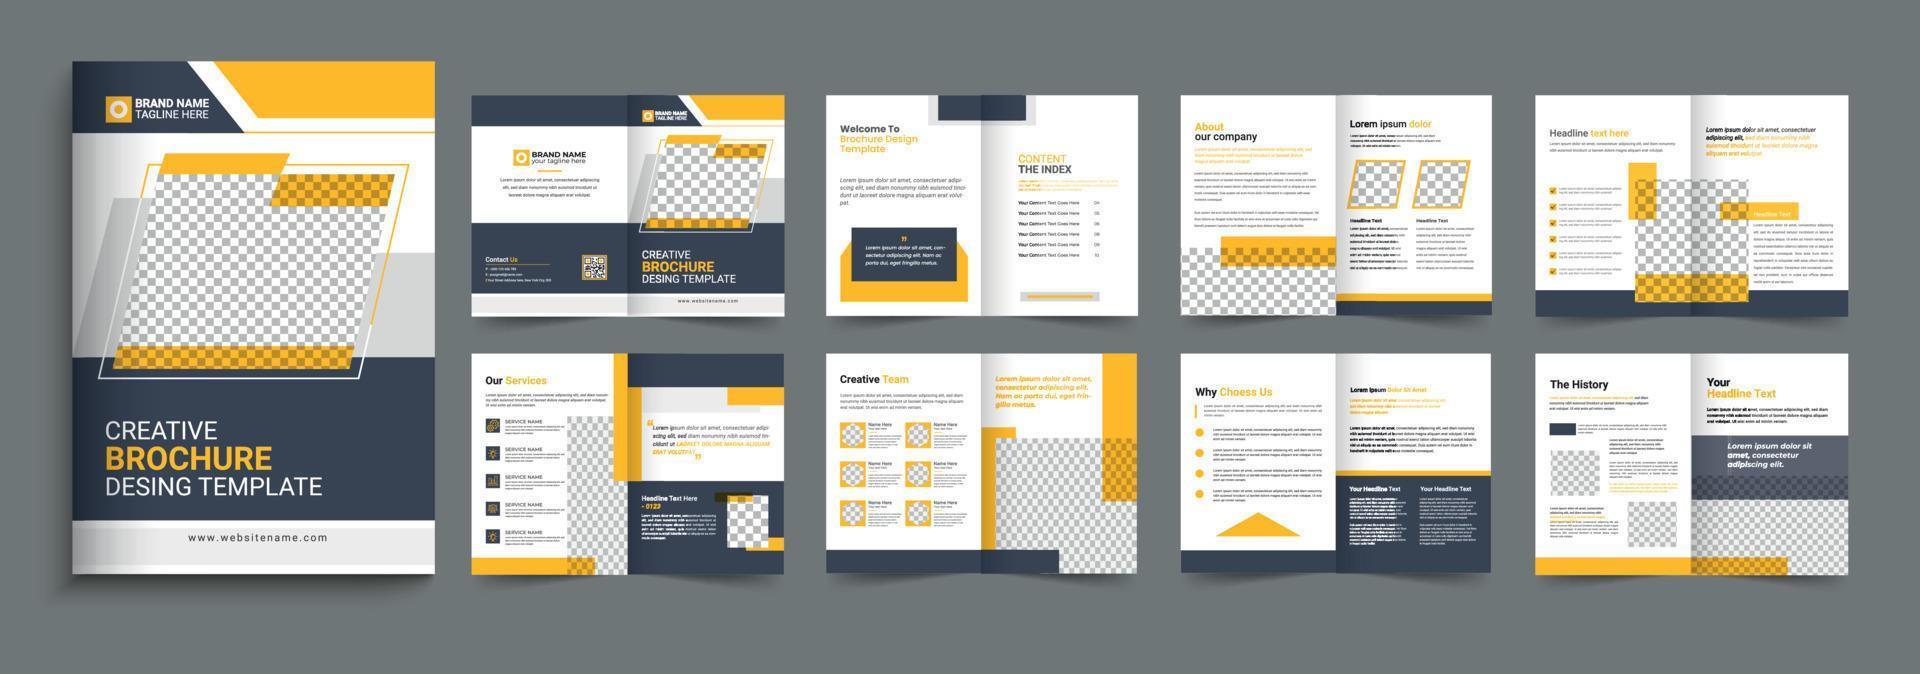 Firmenprofil-Broschüren-Vorlagendesign. 16-seitiges bearbeitbares Vorlagenlayout für Unternehmensbroschüren, minimales Vorlagendesign für Geschäftsbroschüren vektor